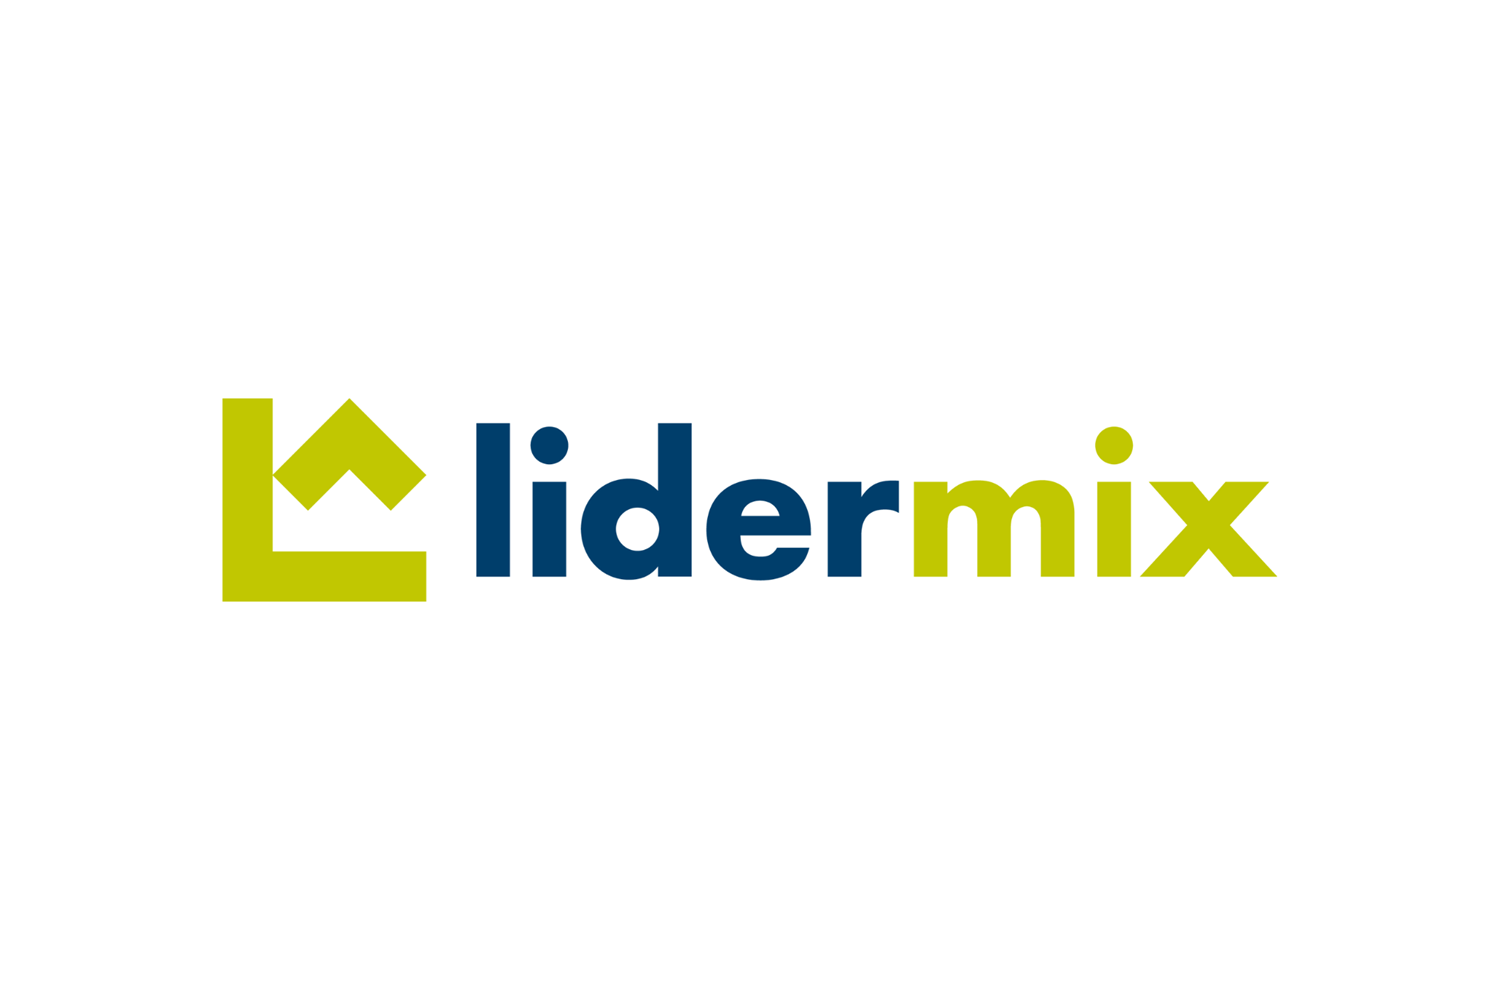 Lidermix